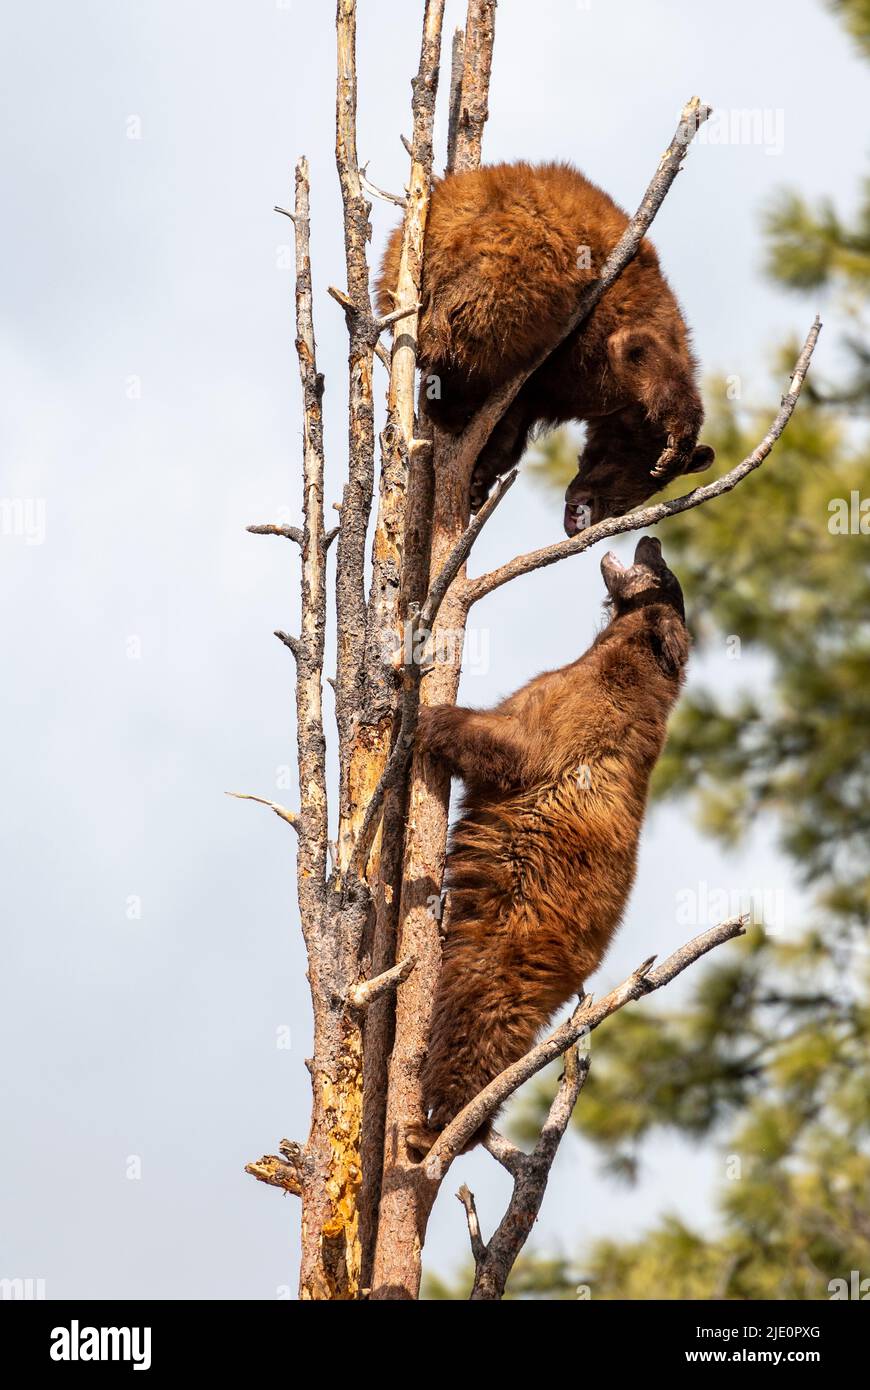 Dos jóvenes osos negros americanos (Ursus americanus) escalando árboles y luchando en Bearizona, Arizona, EE.UU. (Condiciones controladas). Foto de stock